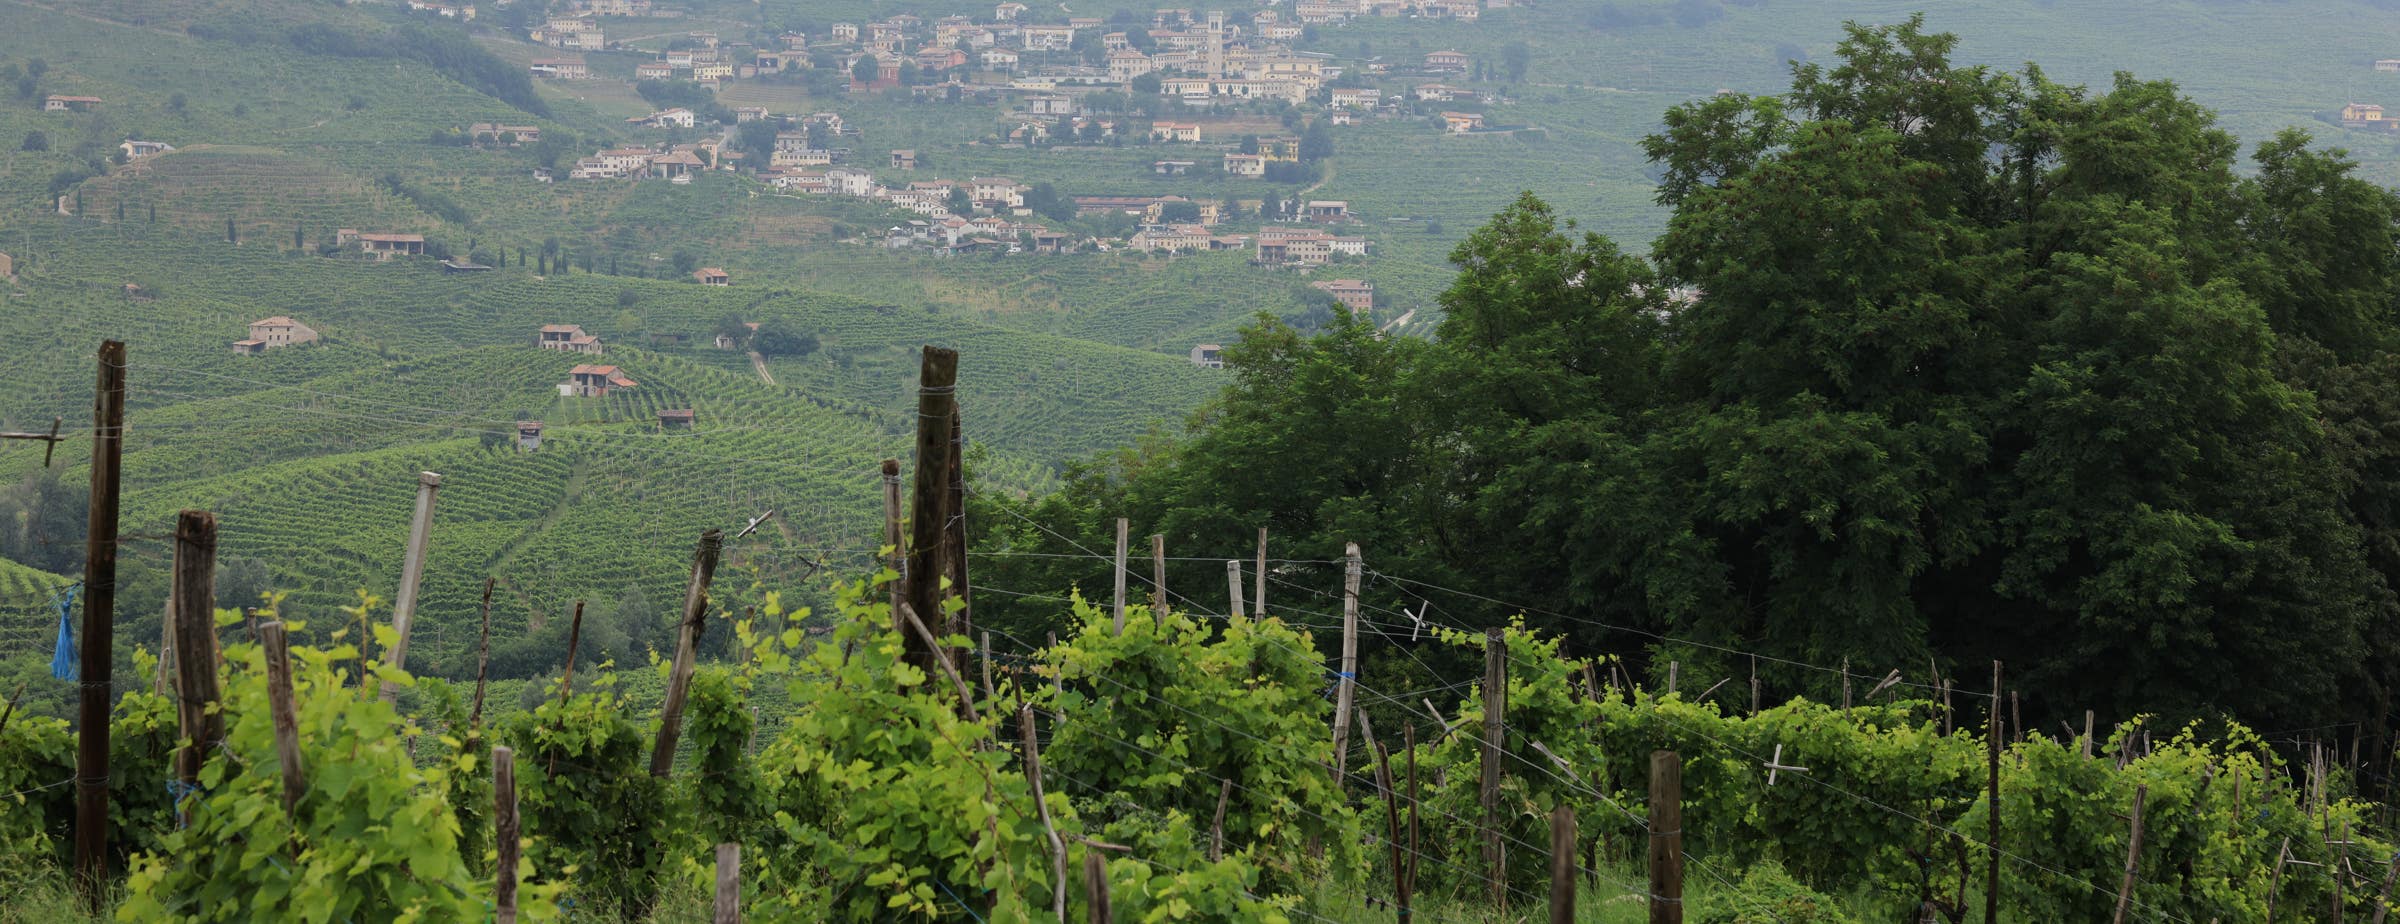 Blick aus einem Weinberg, der im Vordergrund dichte Weinreben und in der Ferne weitere Weinberge und ein kleines Dorf zeigt.